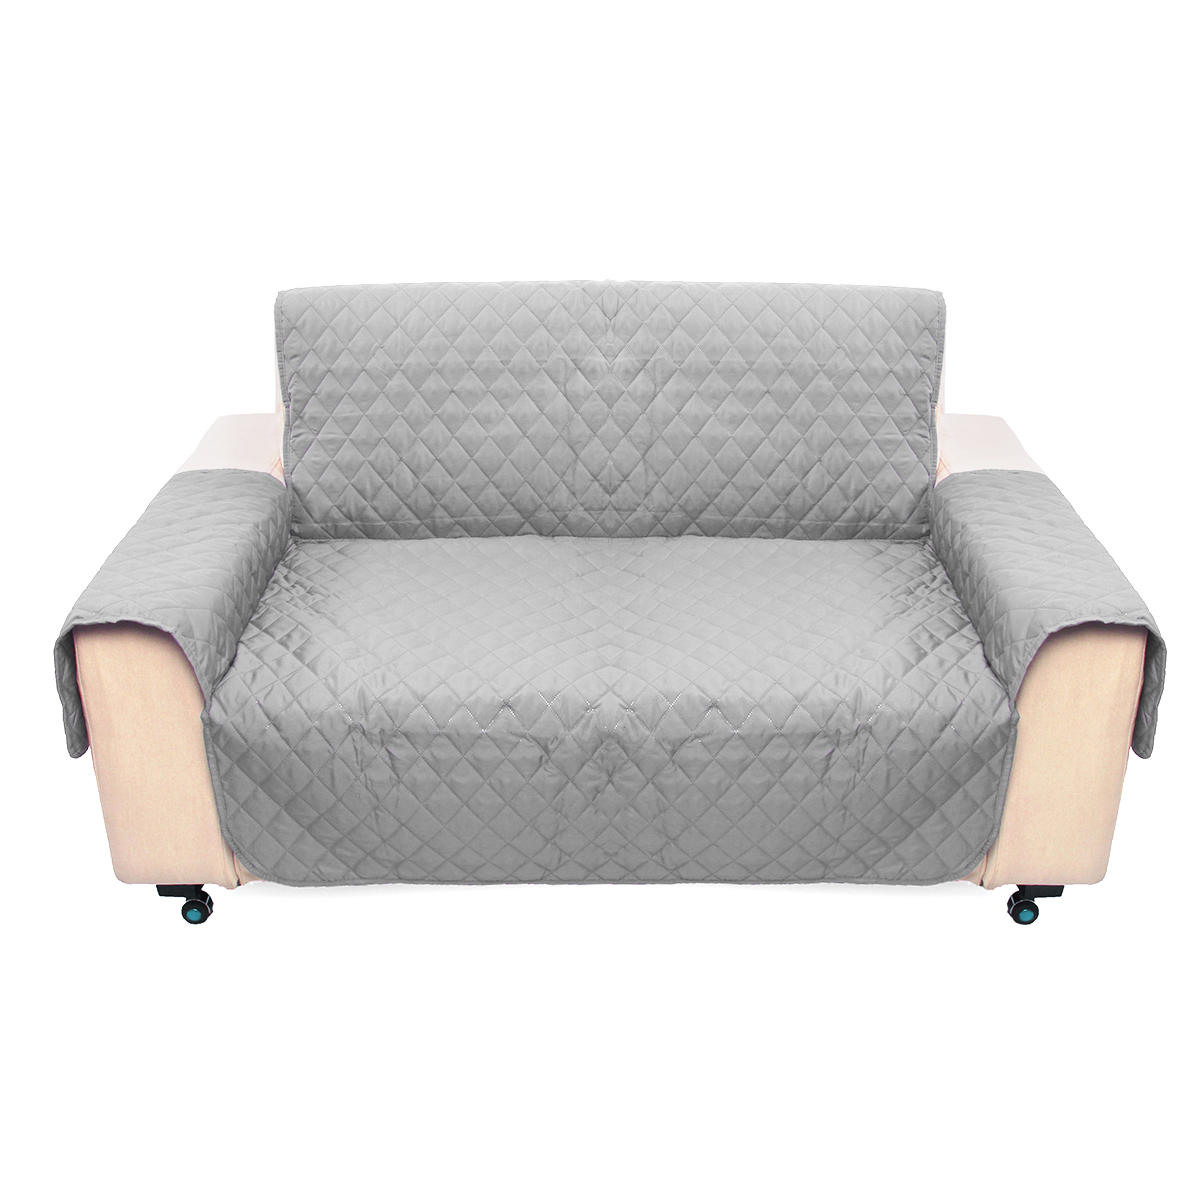 sofa seat covers canada